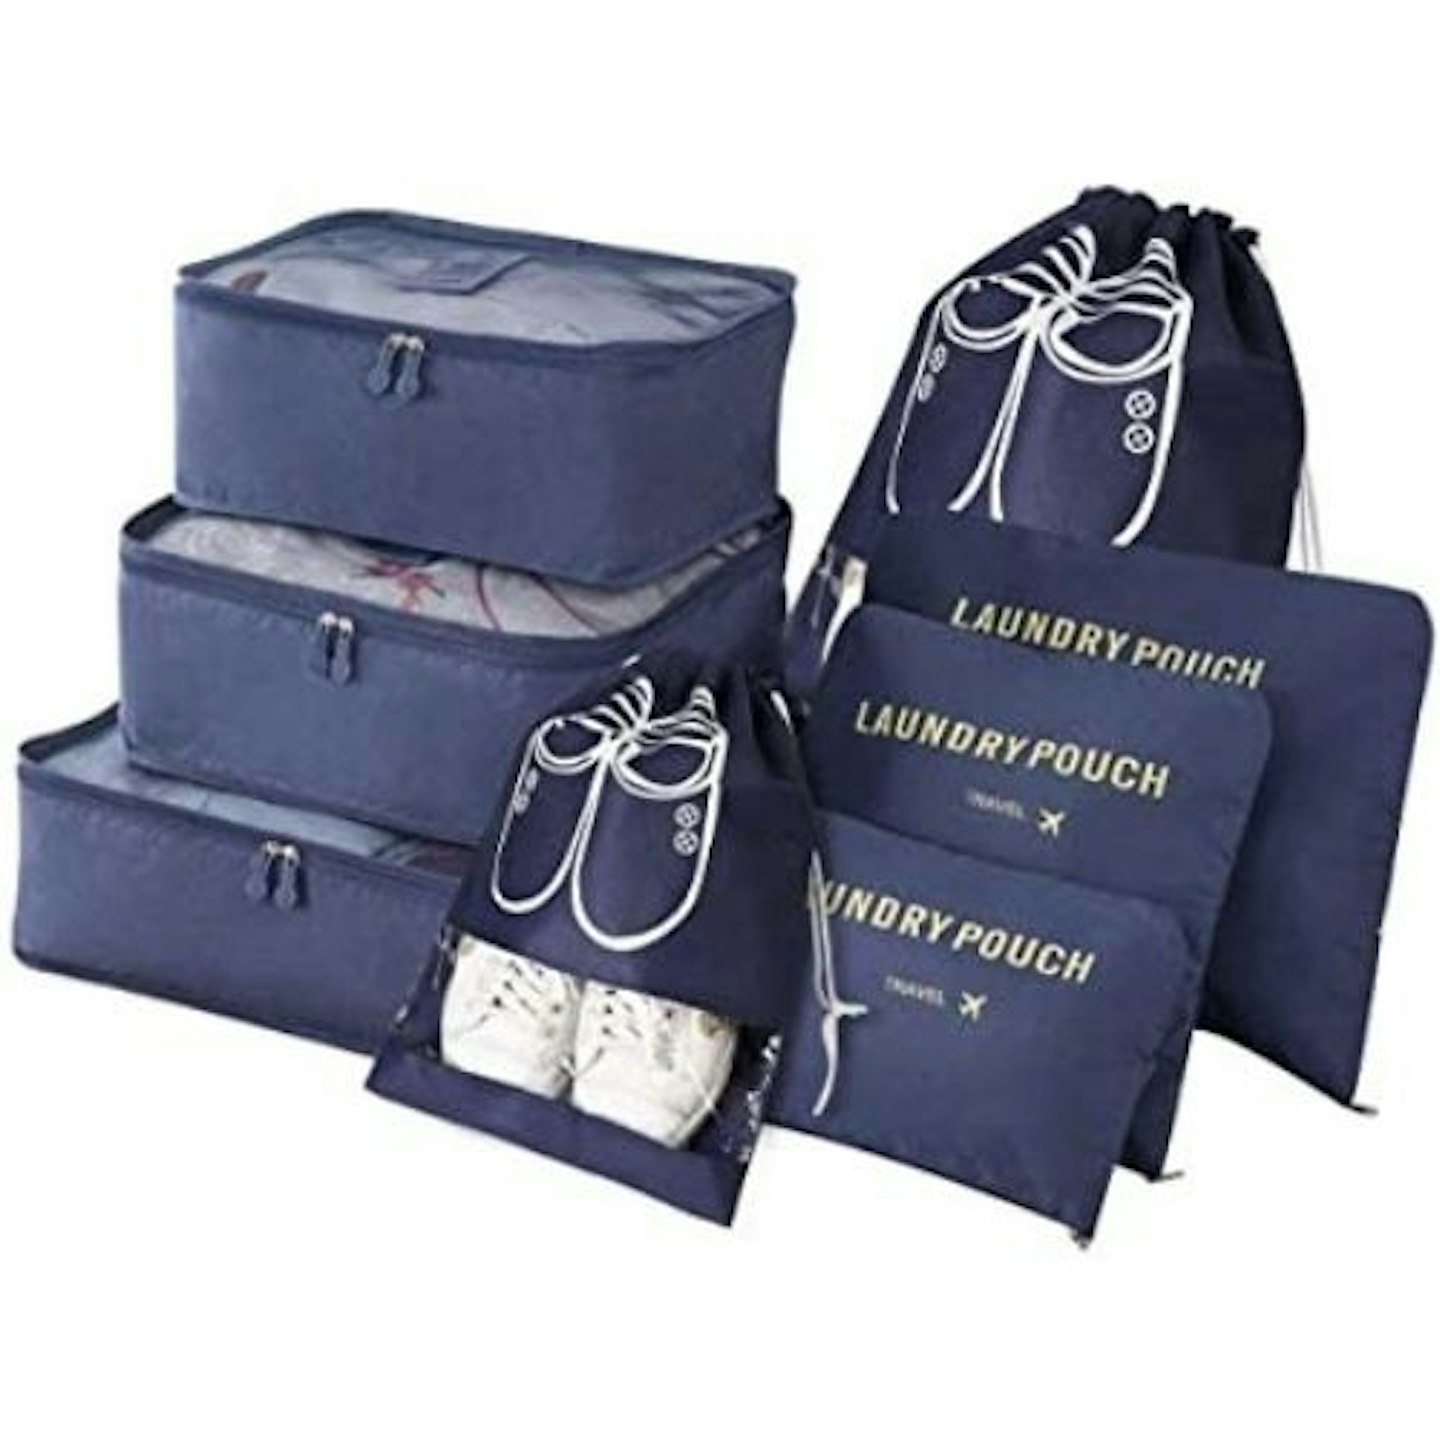 Vicloon Travel Organiser Packing Bags